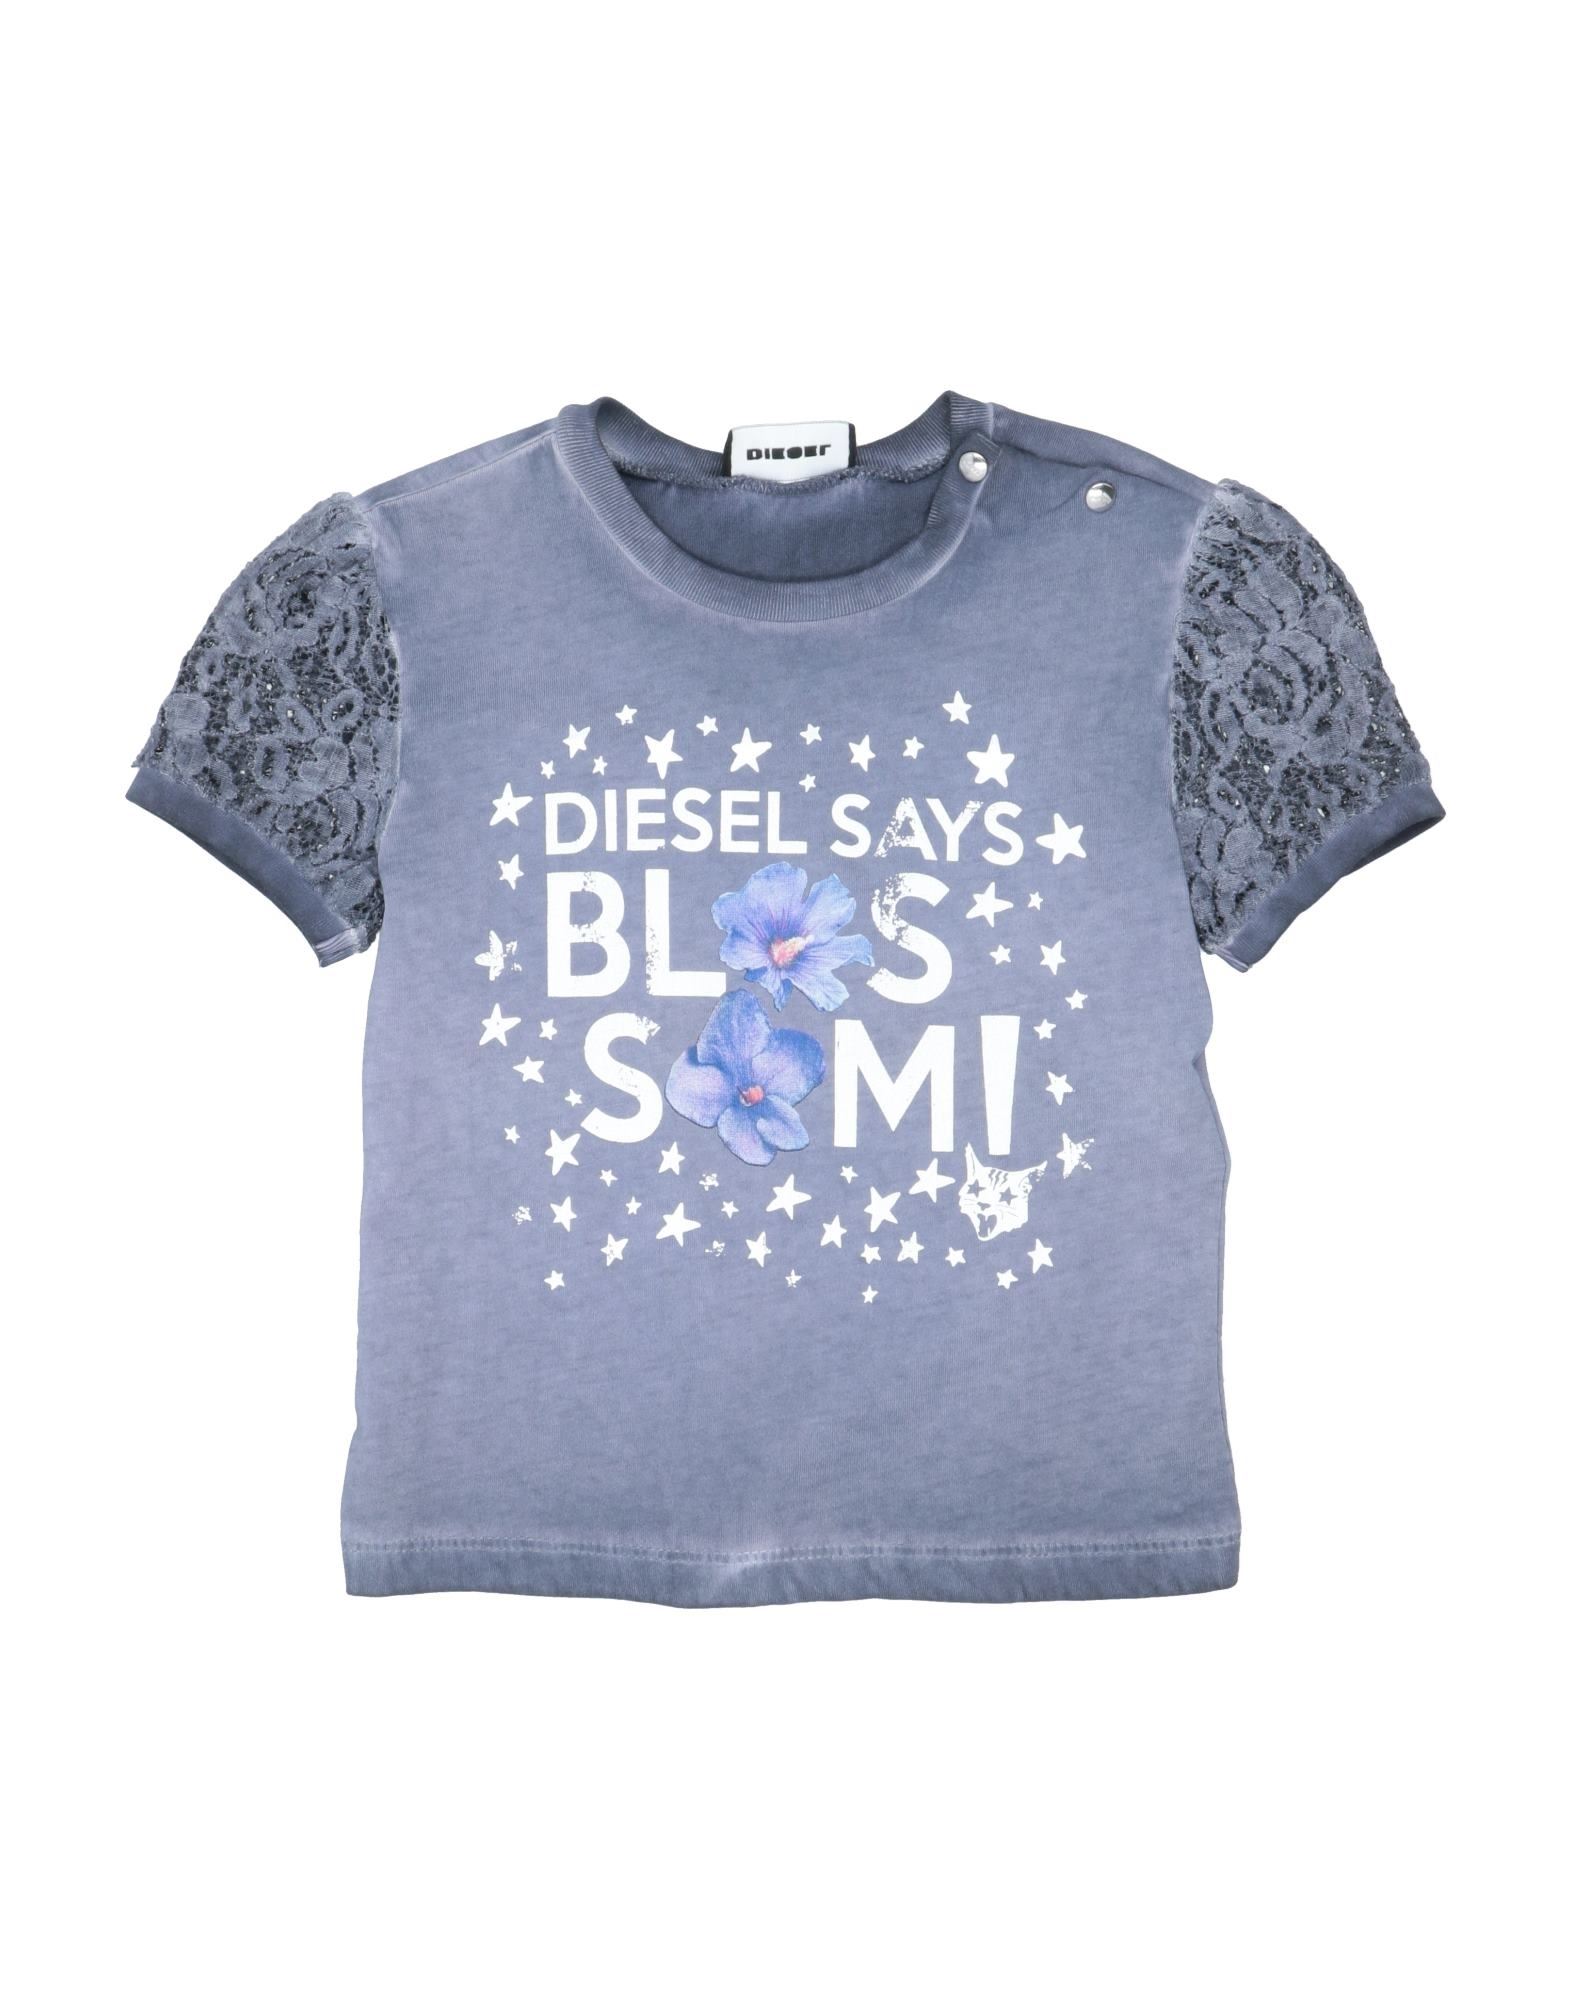 Diesel Kids' T-shirts In Slate Blue